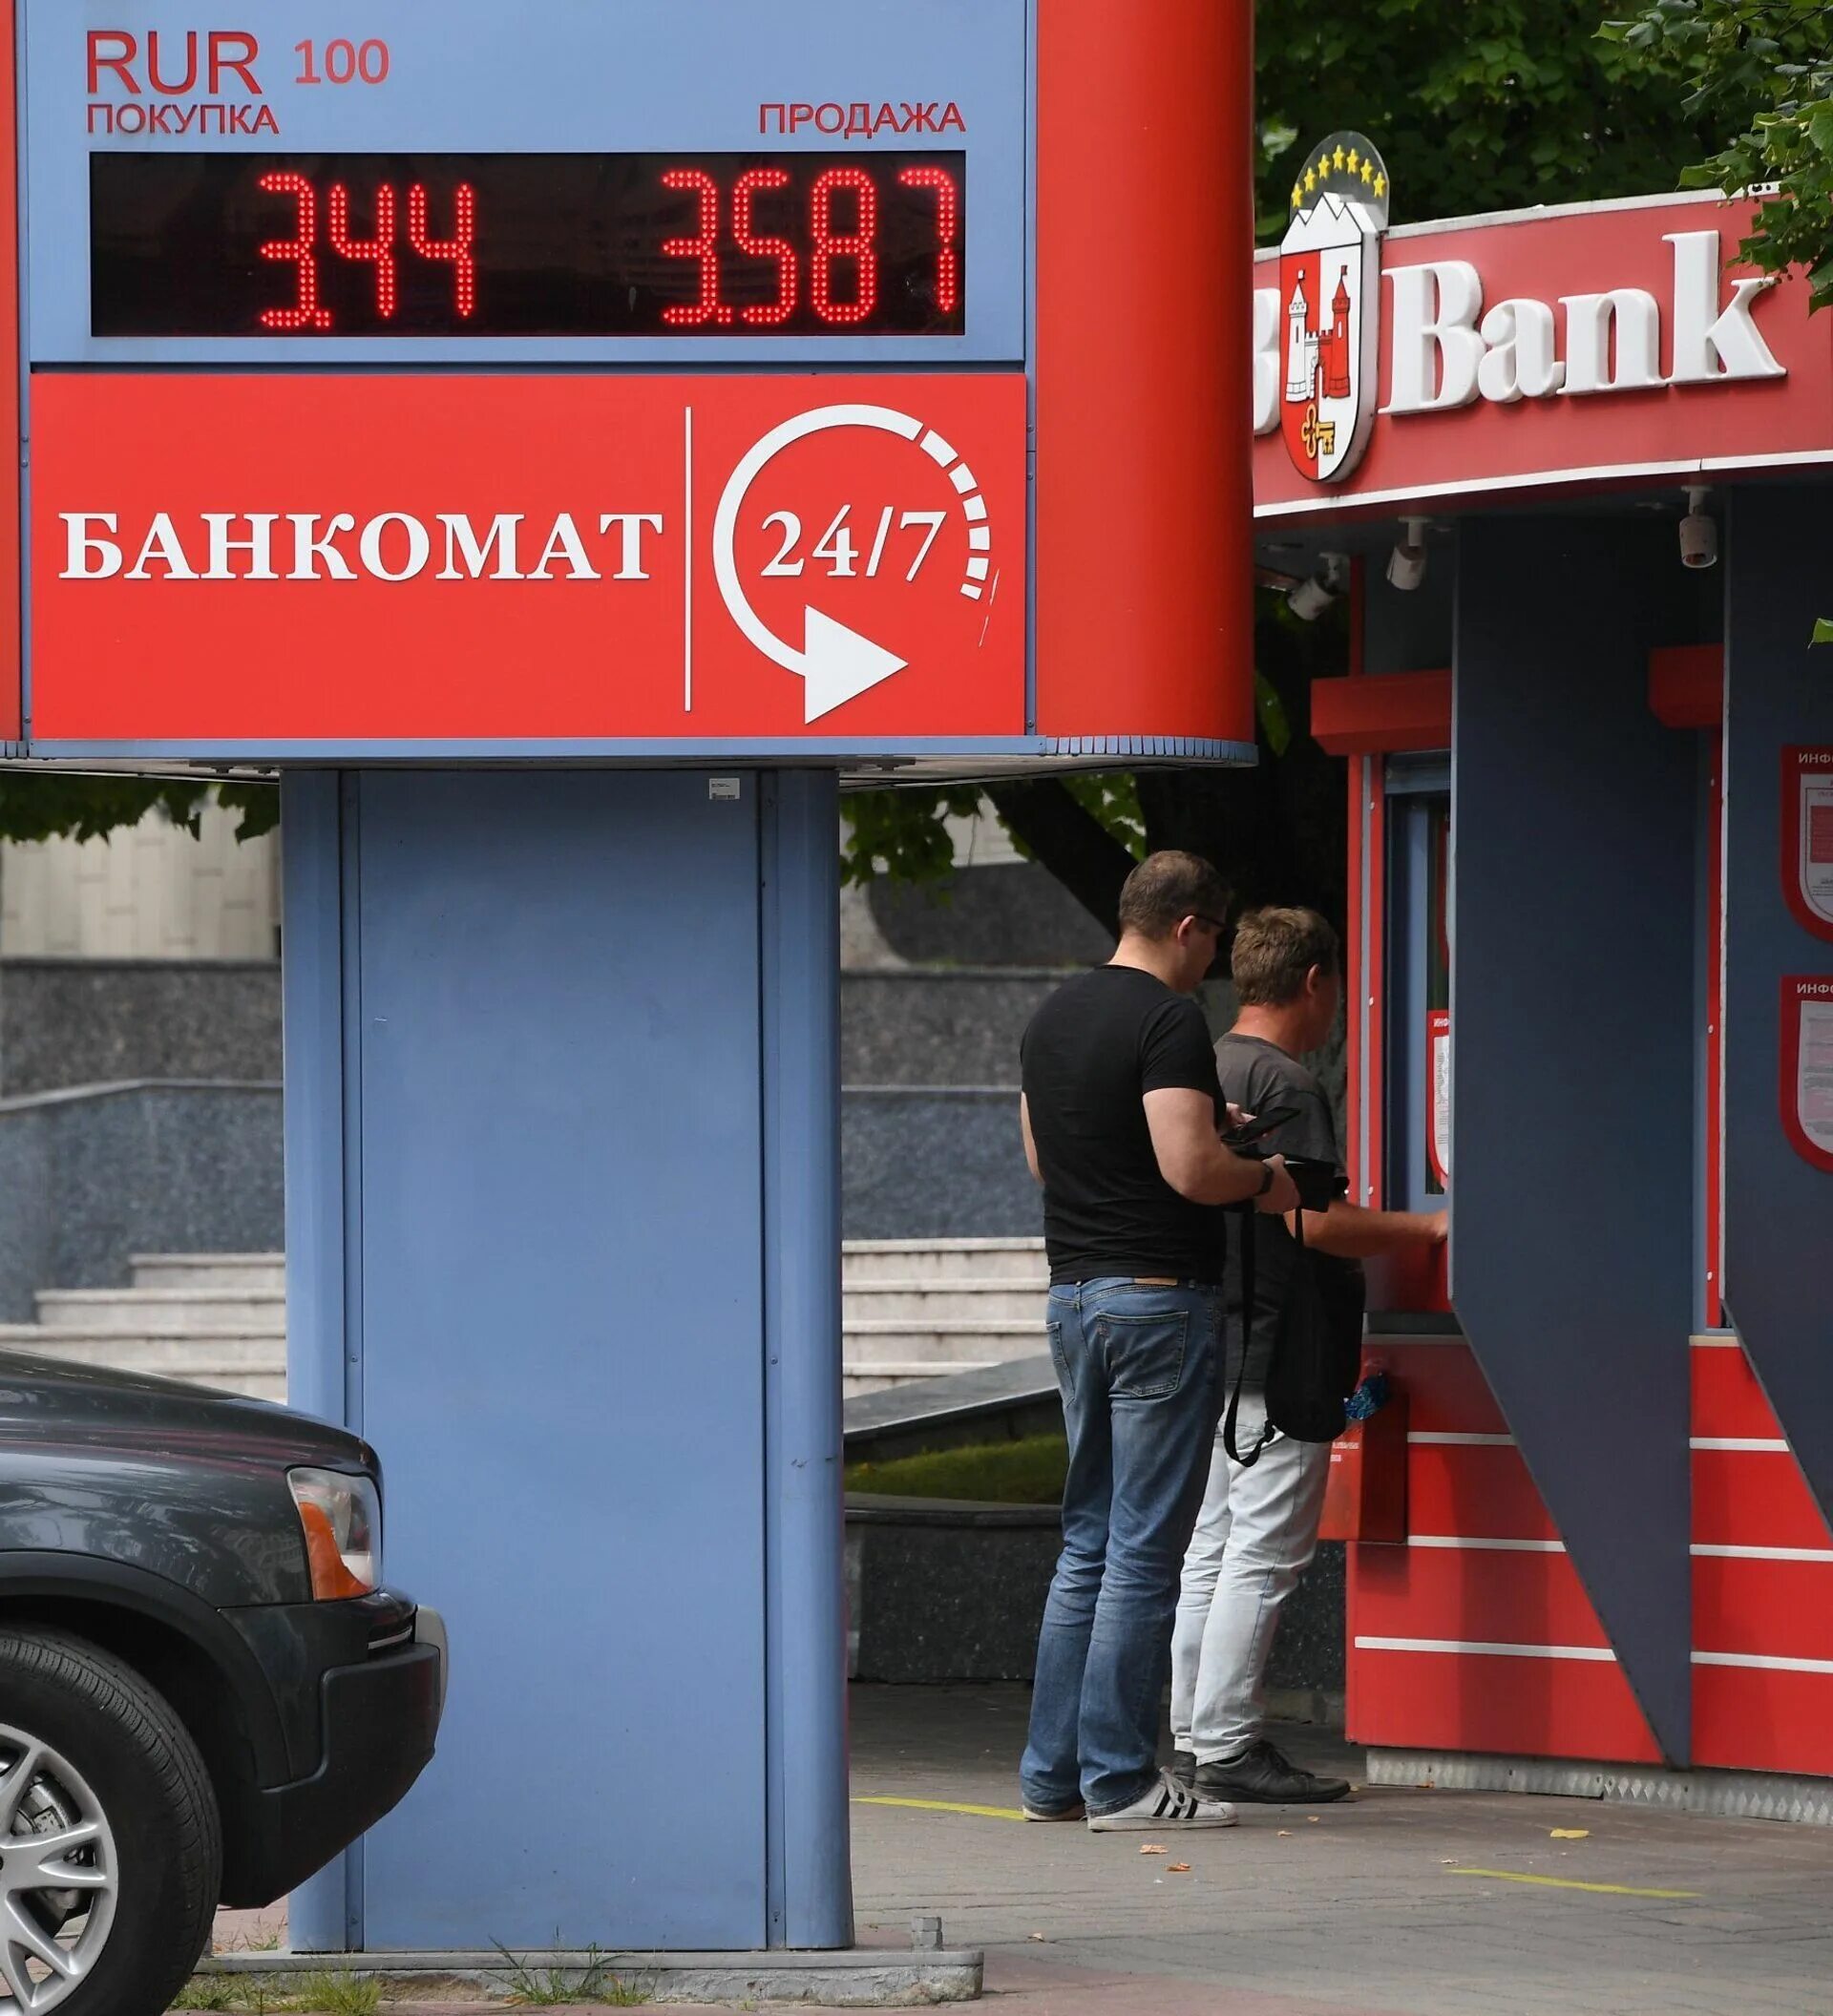 Обмен валюты. Банк обмен валюты. Обменники в Беларуси. Обмен валюты картинки.